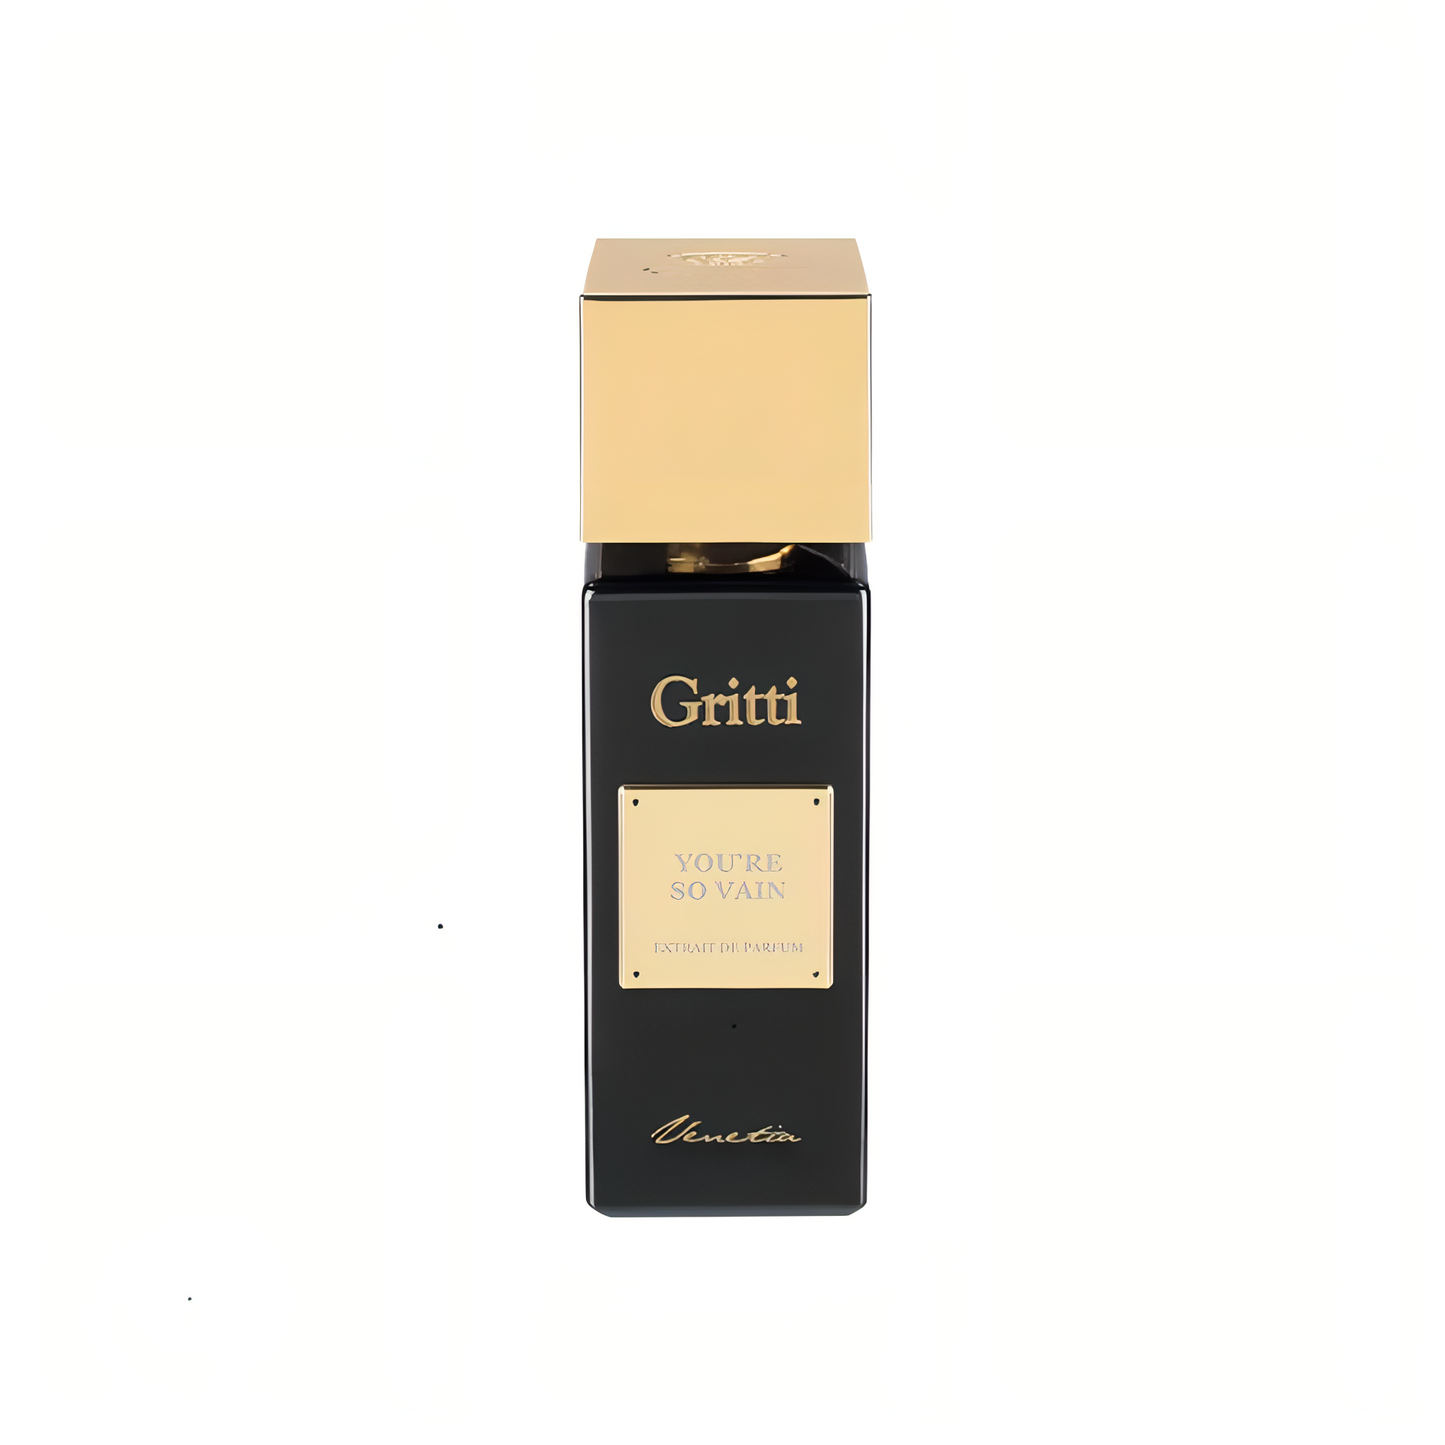 You're So Vain Gritti Extrait de Parfum 100ml